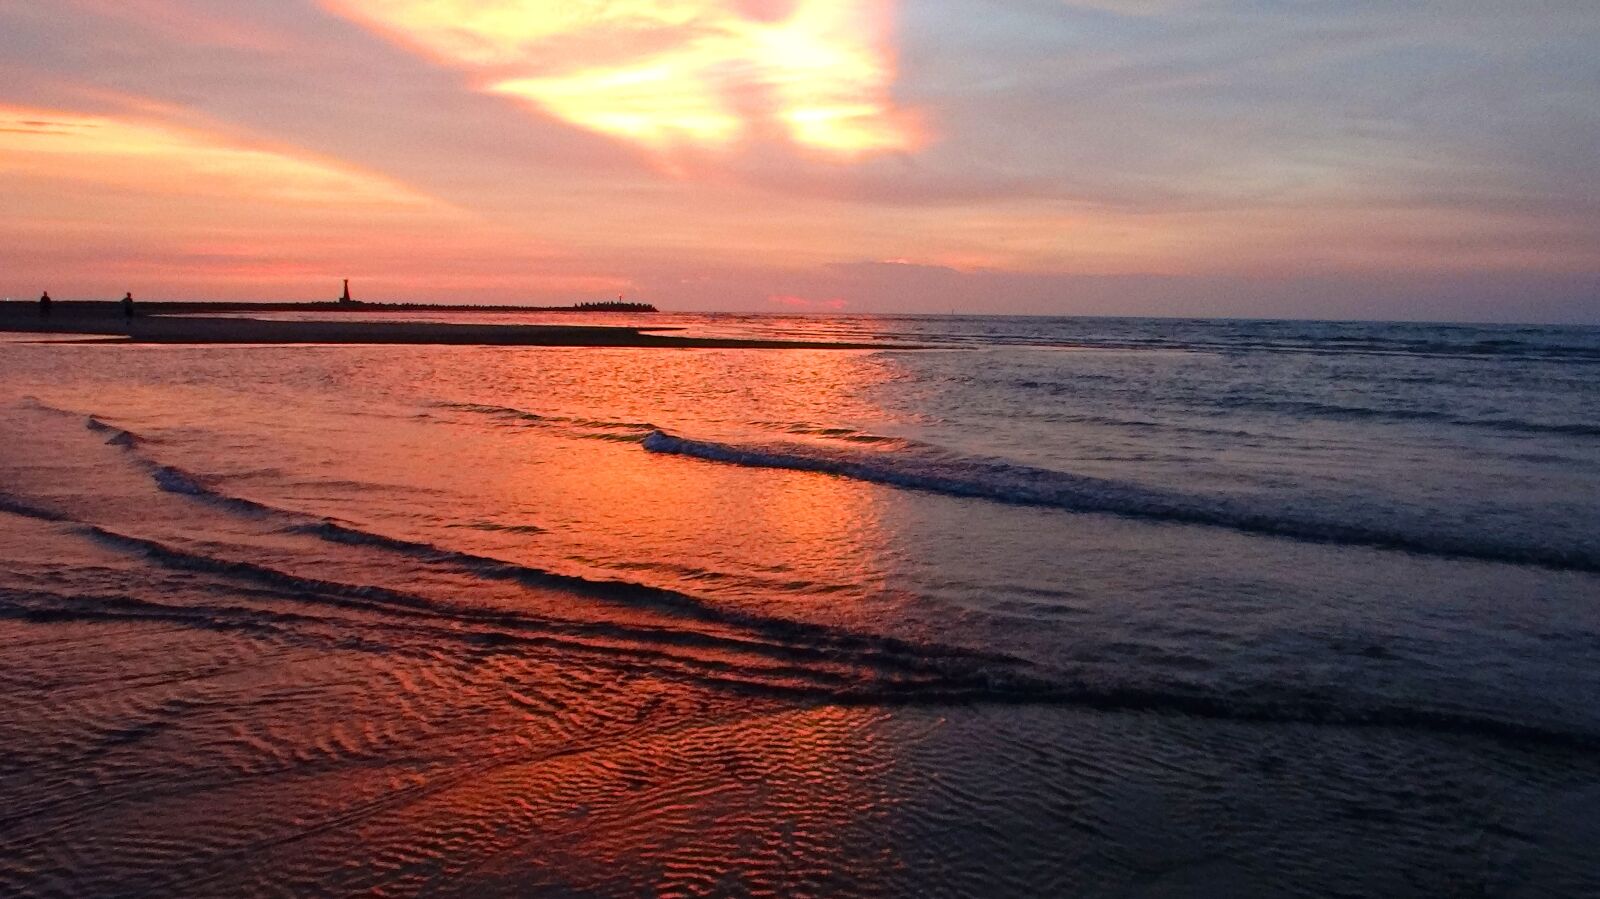 Sony DSC-HX200V sample photo. Seascape, beach, sunset photography